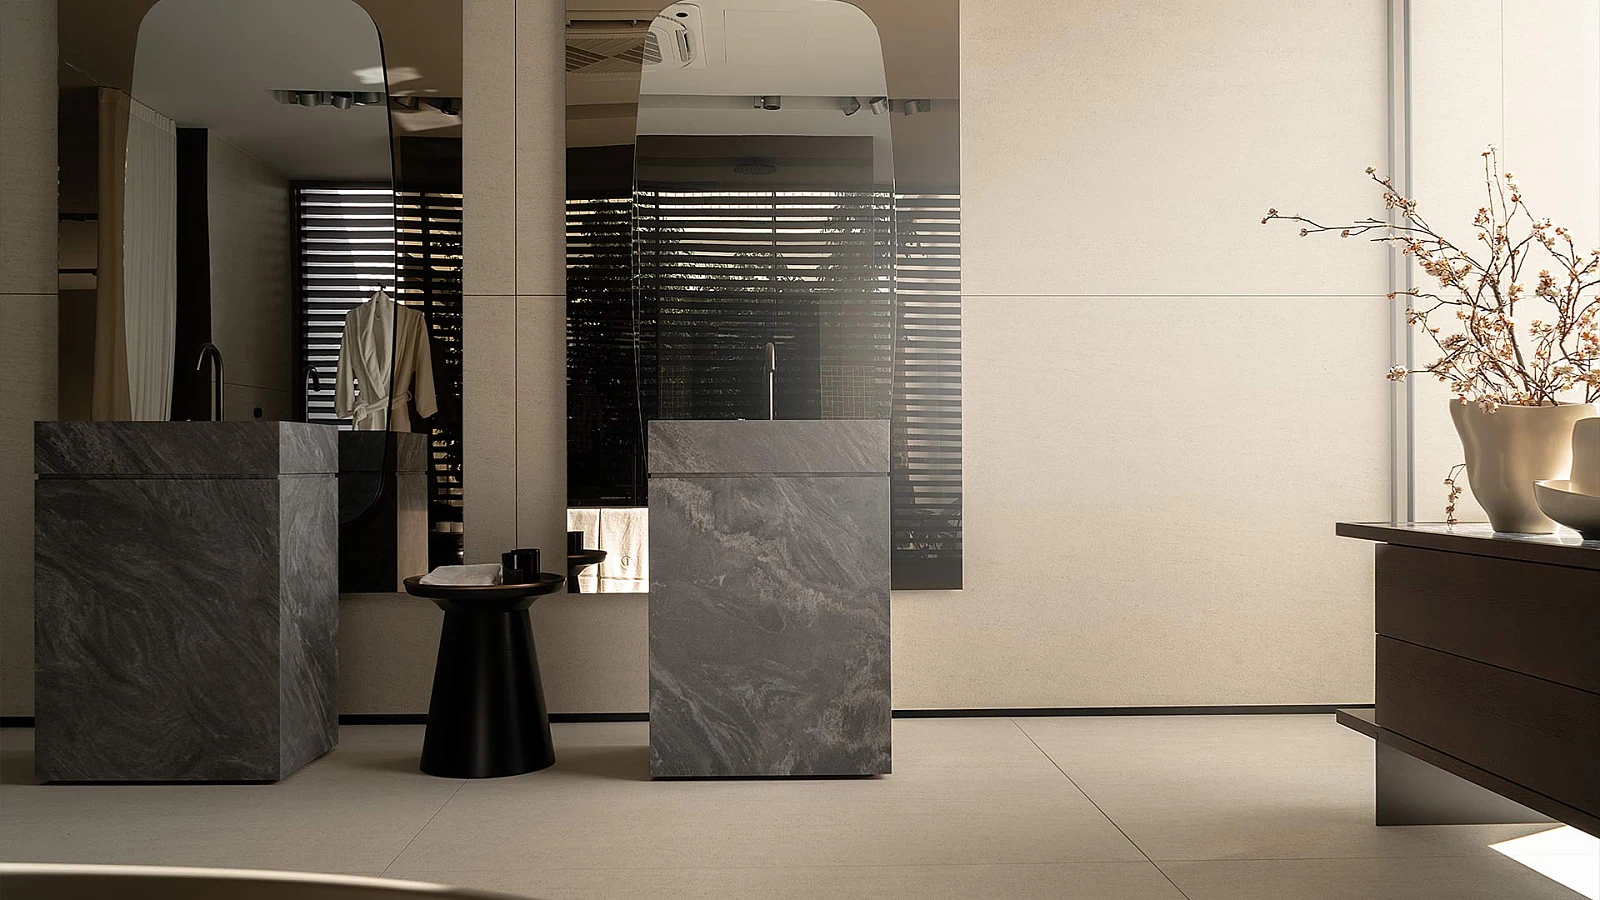 Przestrzenna łazienka o jasnych ścianach, z ogromnymi lustrami oraz wolnostojącymi umywalkami z kamienną fakturą.